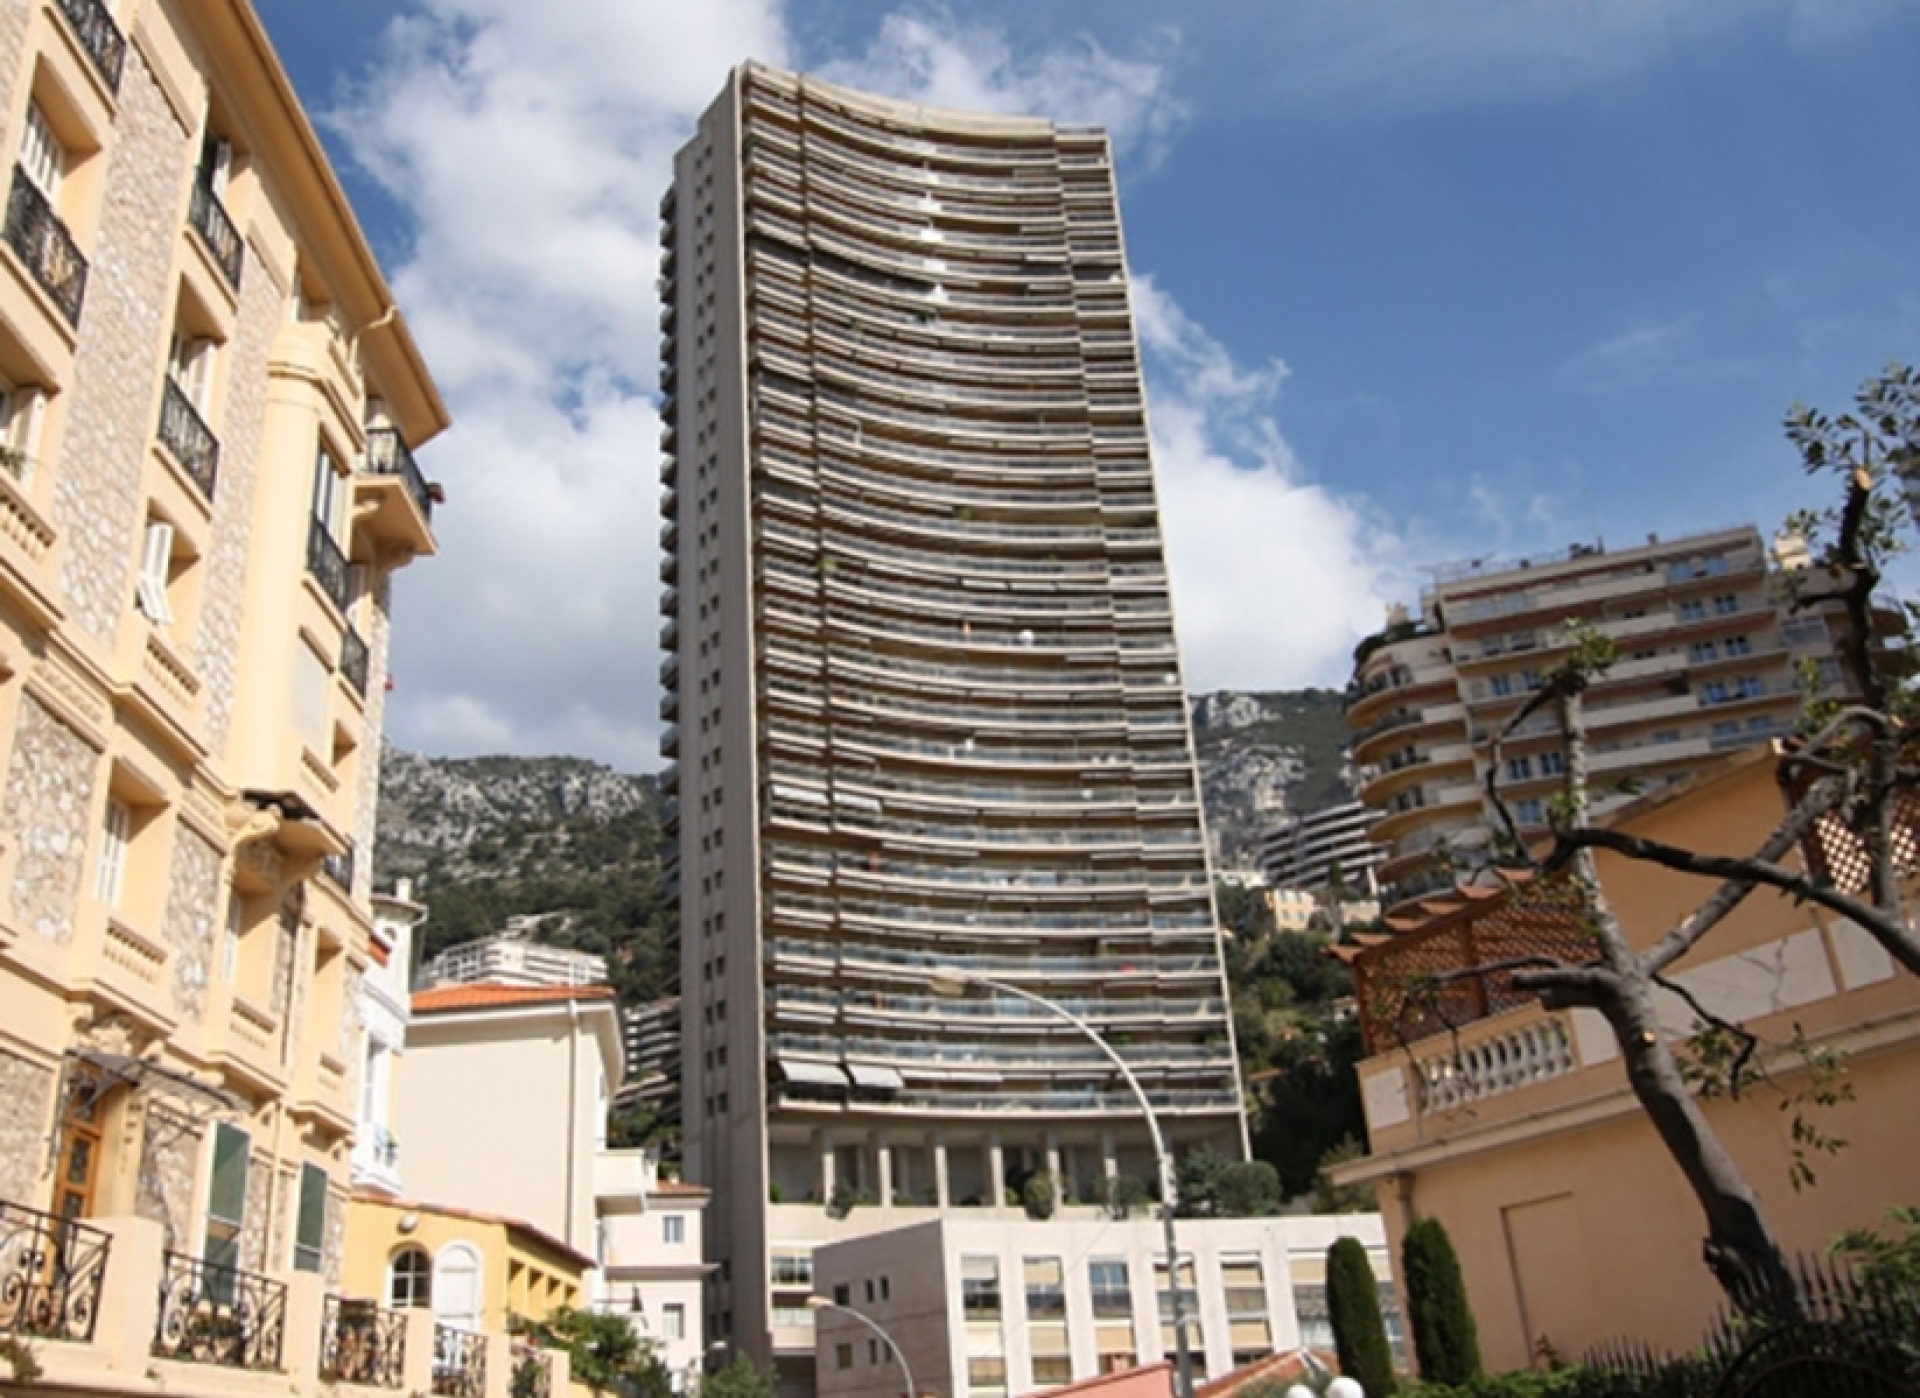 Dotta Appartement de 4 pieces a vendre - ANNONCIADE - La Rousse - Monaco - imgannonciade